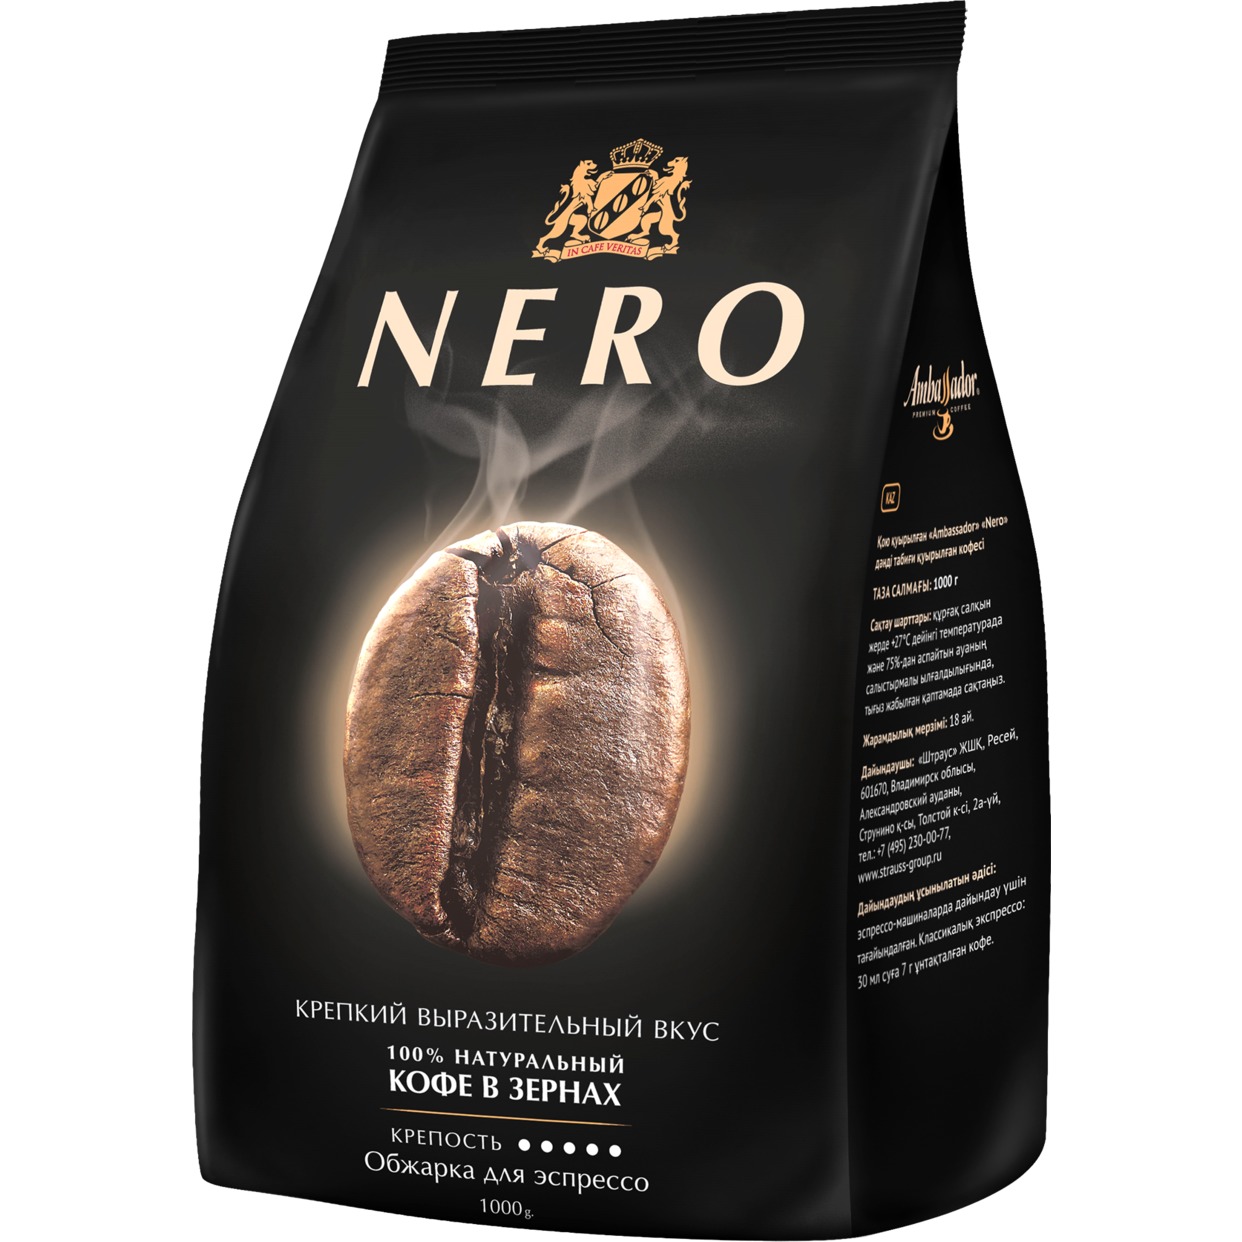 Кофе Ambassador Nero жареный в зернах 1000 г по акции в Пятерочке